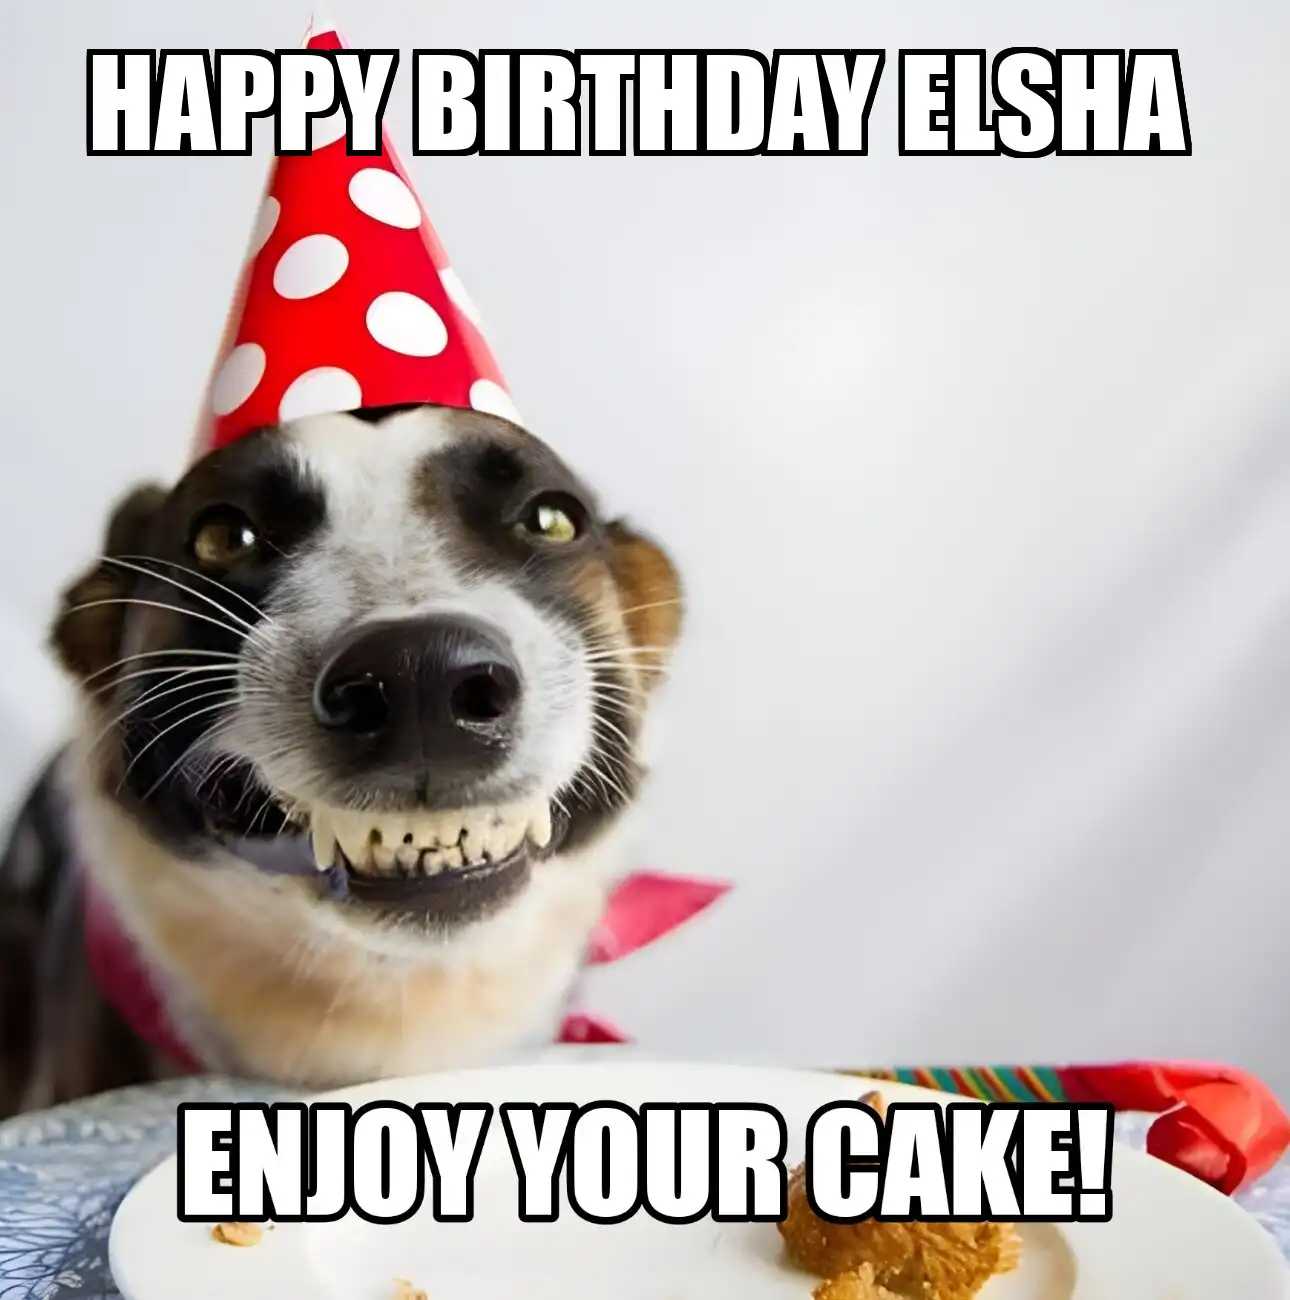 Happy Birthday Elsha Enjoy Your Cake Dog Meme